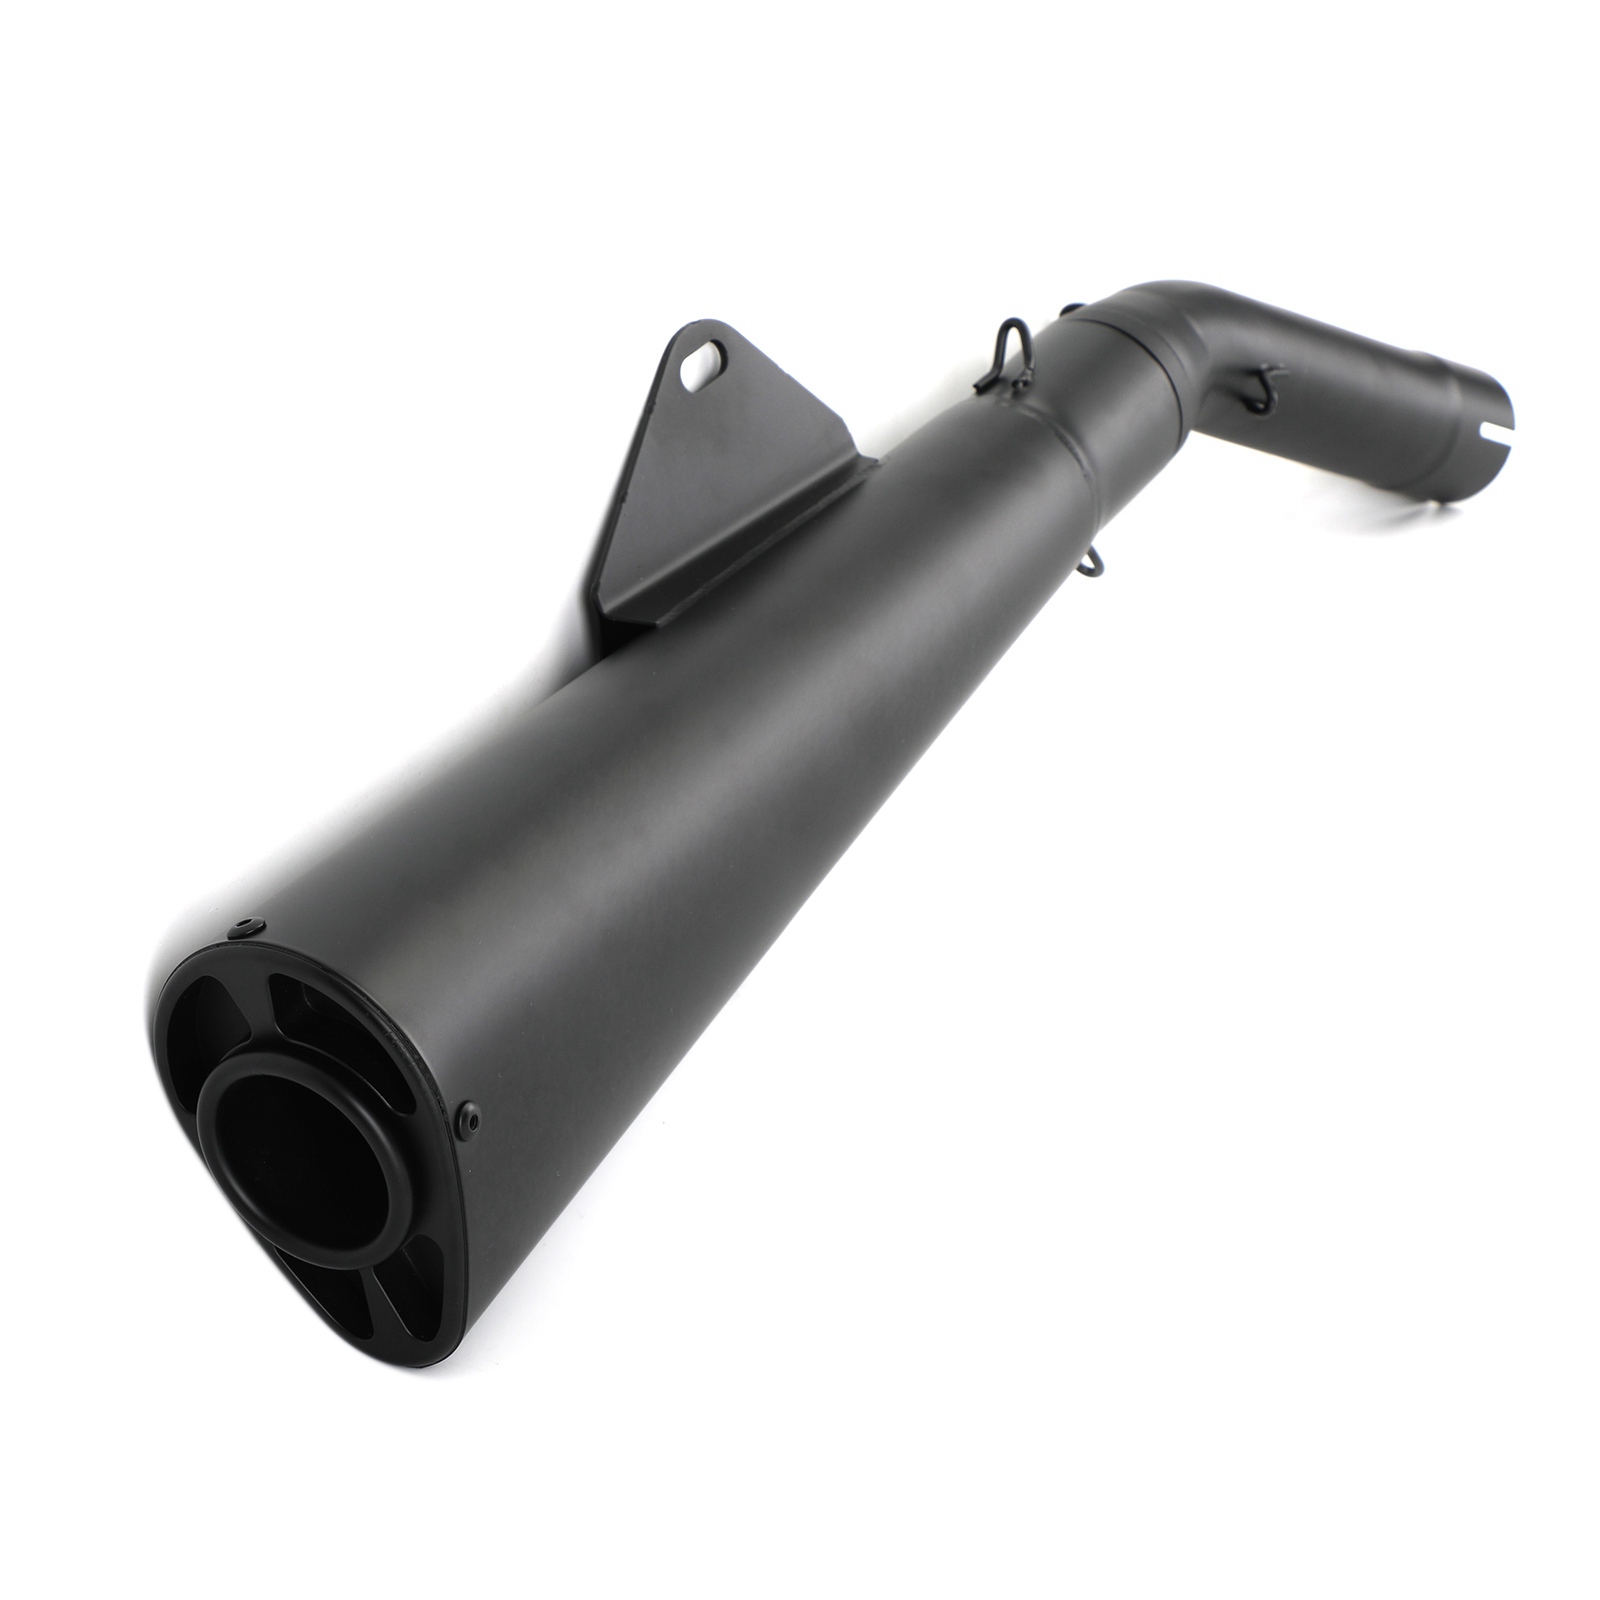 Exhaust silencer black for honda rebel cmx 300 cmx 500 2017 2018 2019